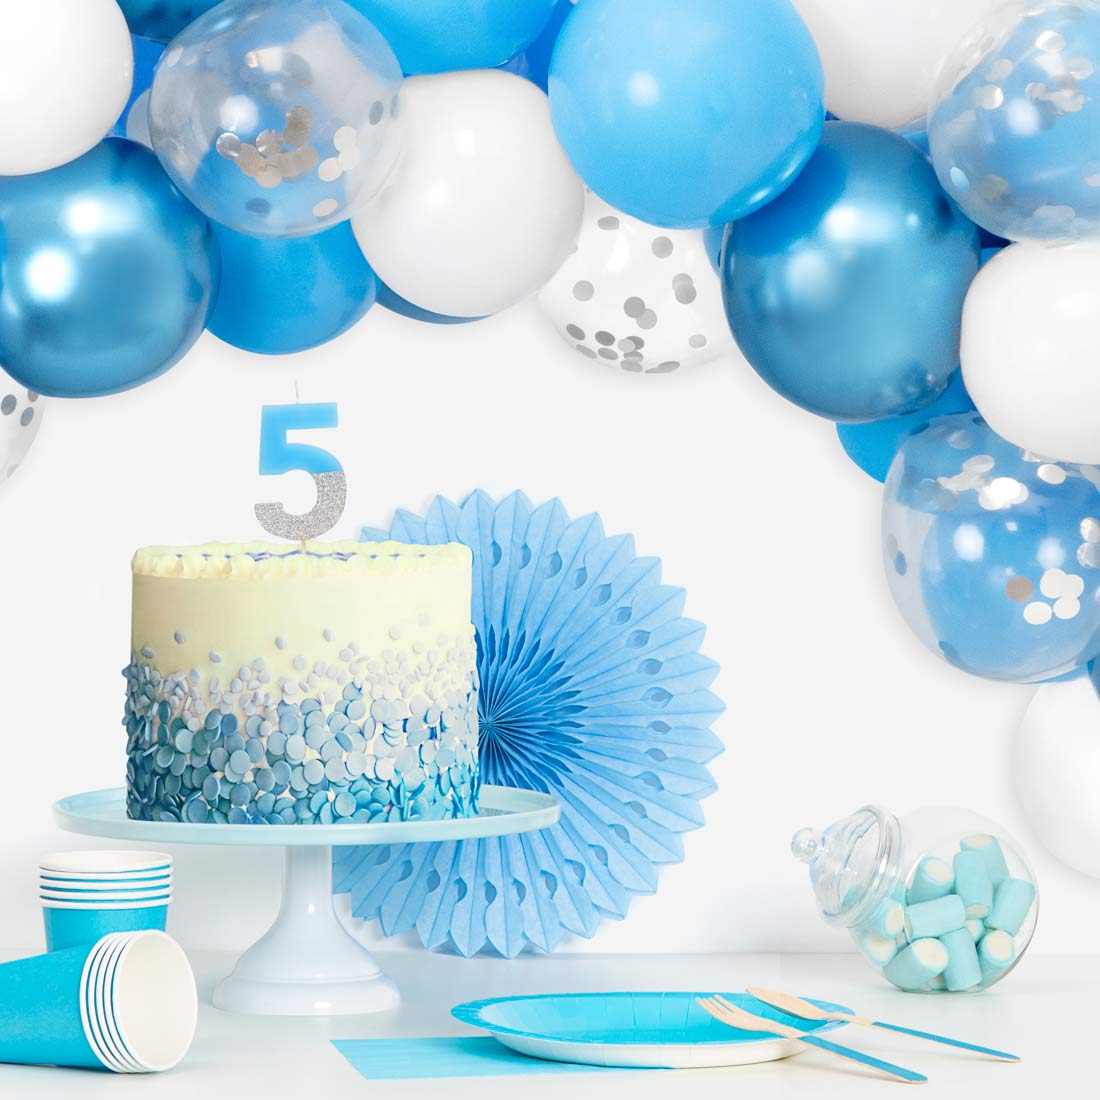 Blu, bianco, blu metallico e palloncino trasparente con coriandoli